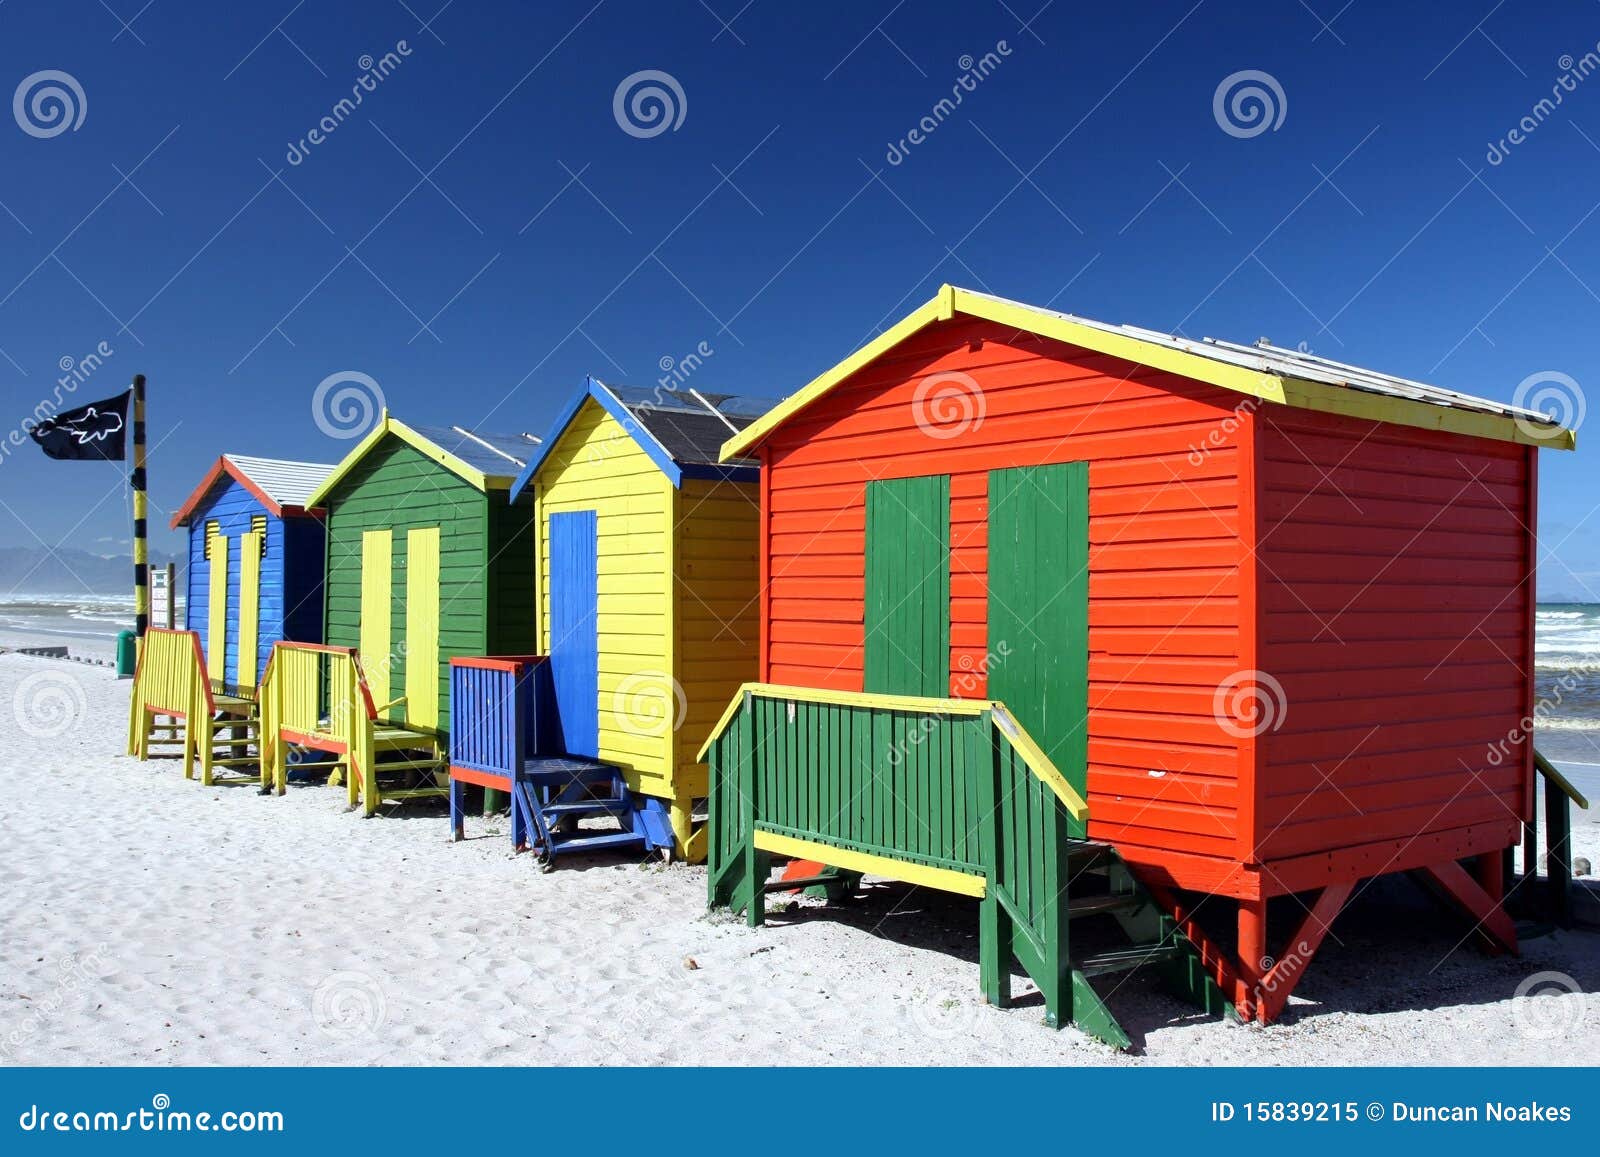 Cuartos Coloridos Del Cambio De La Playa Imagen de archivo - Imagen de